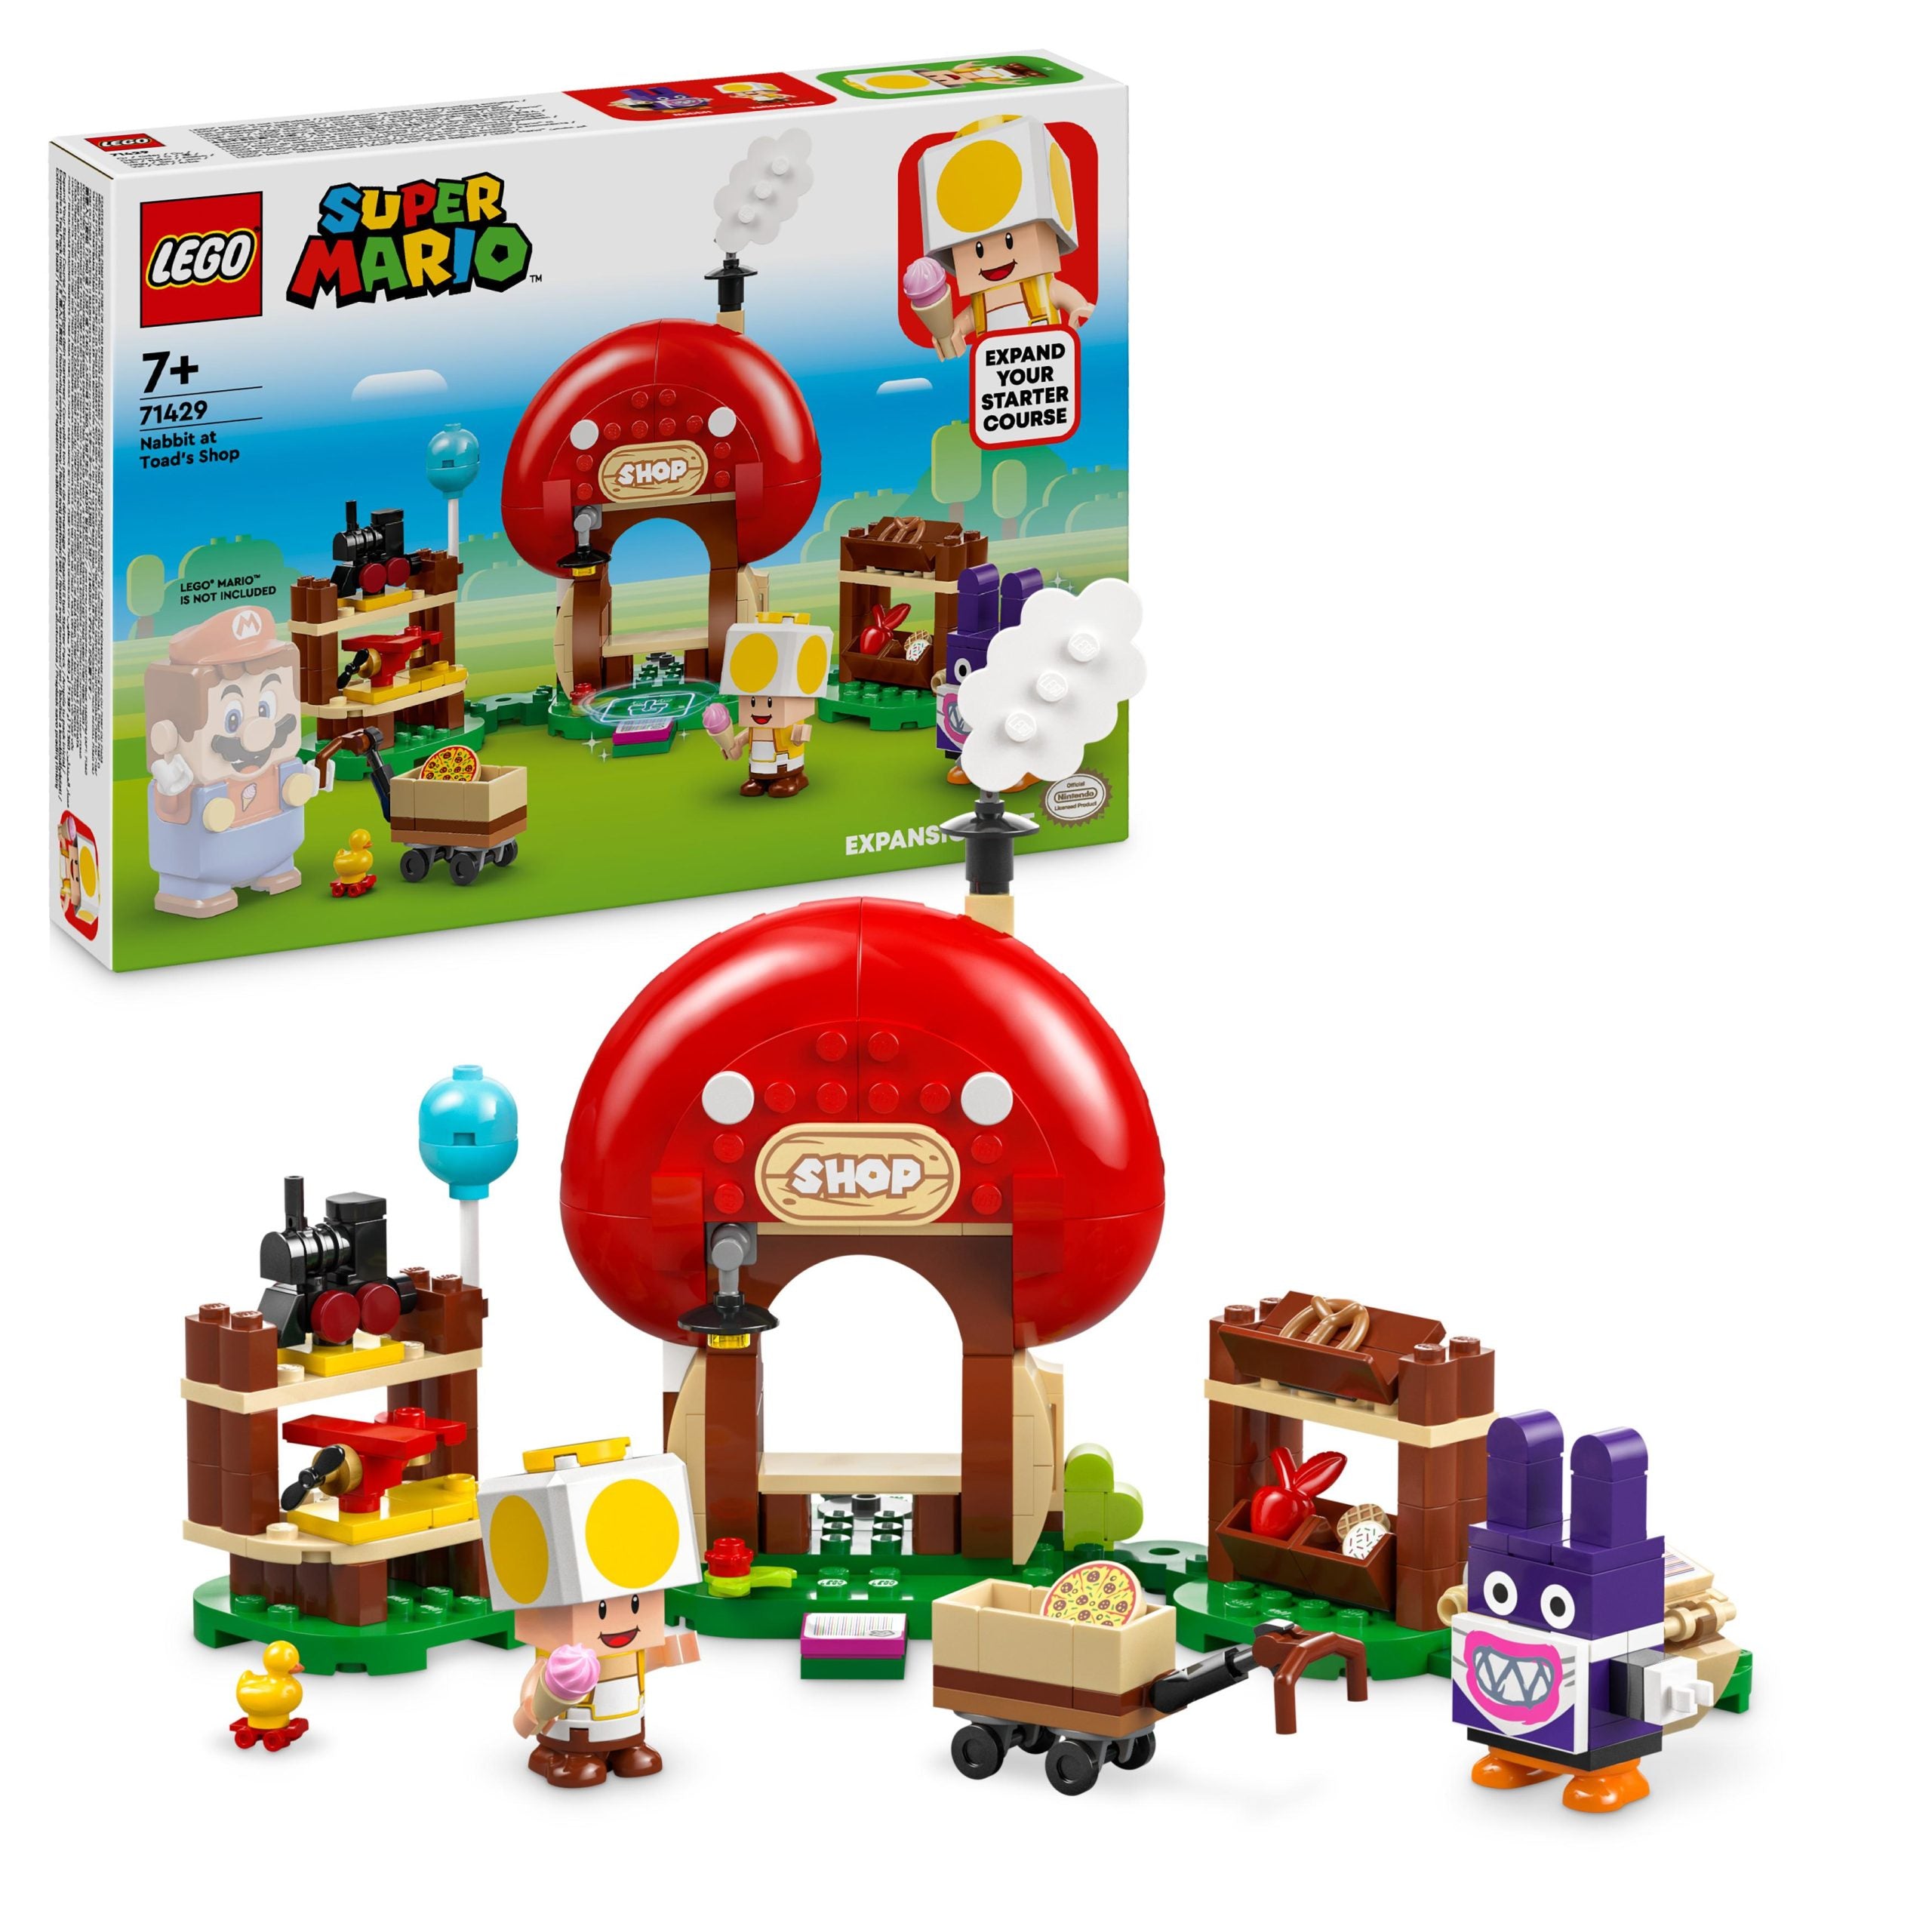 71429 LEGO Super Mario Pack di espansione Ruboniglio al negozio di Toad